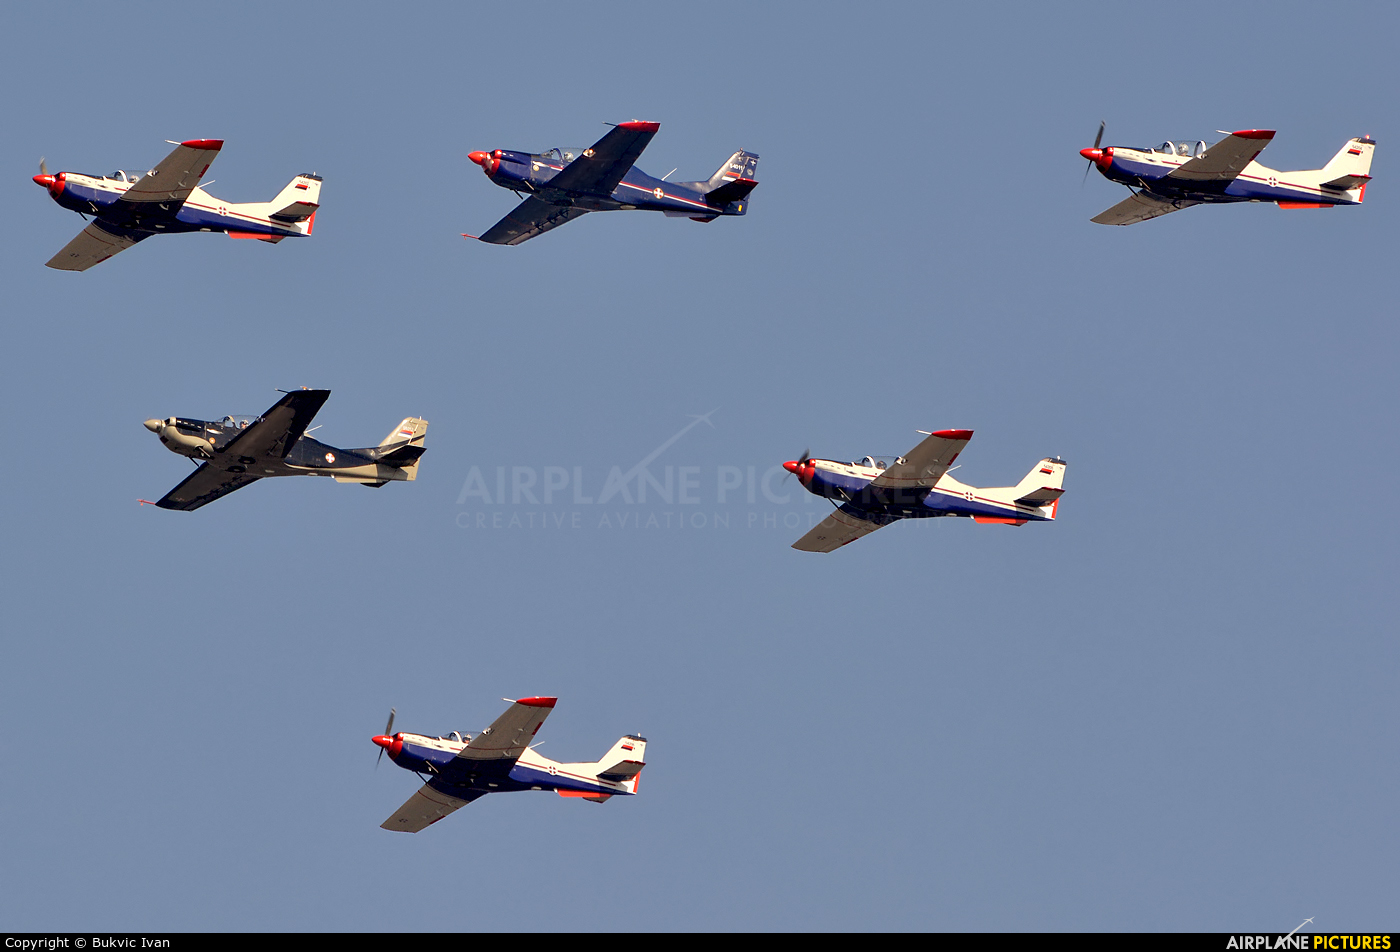 Serbia - Air Force 54202 aircraft at Off Airport - Serbia